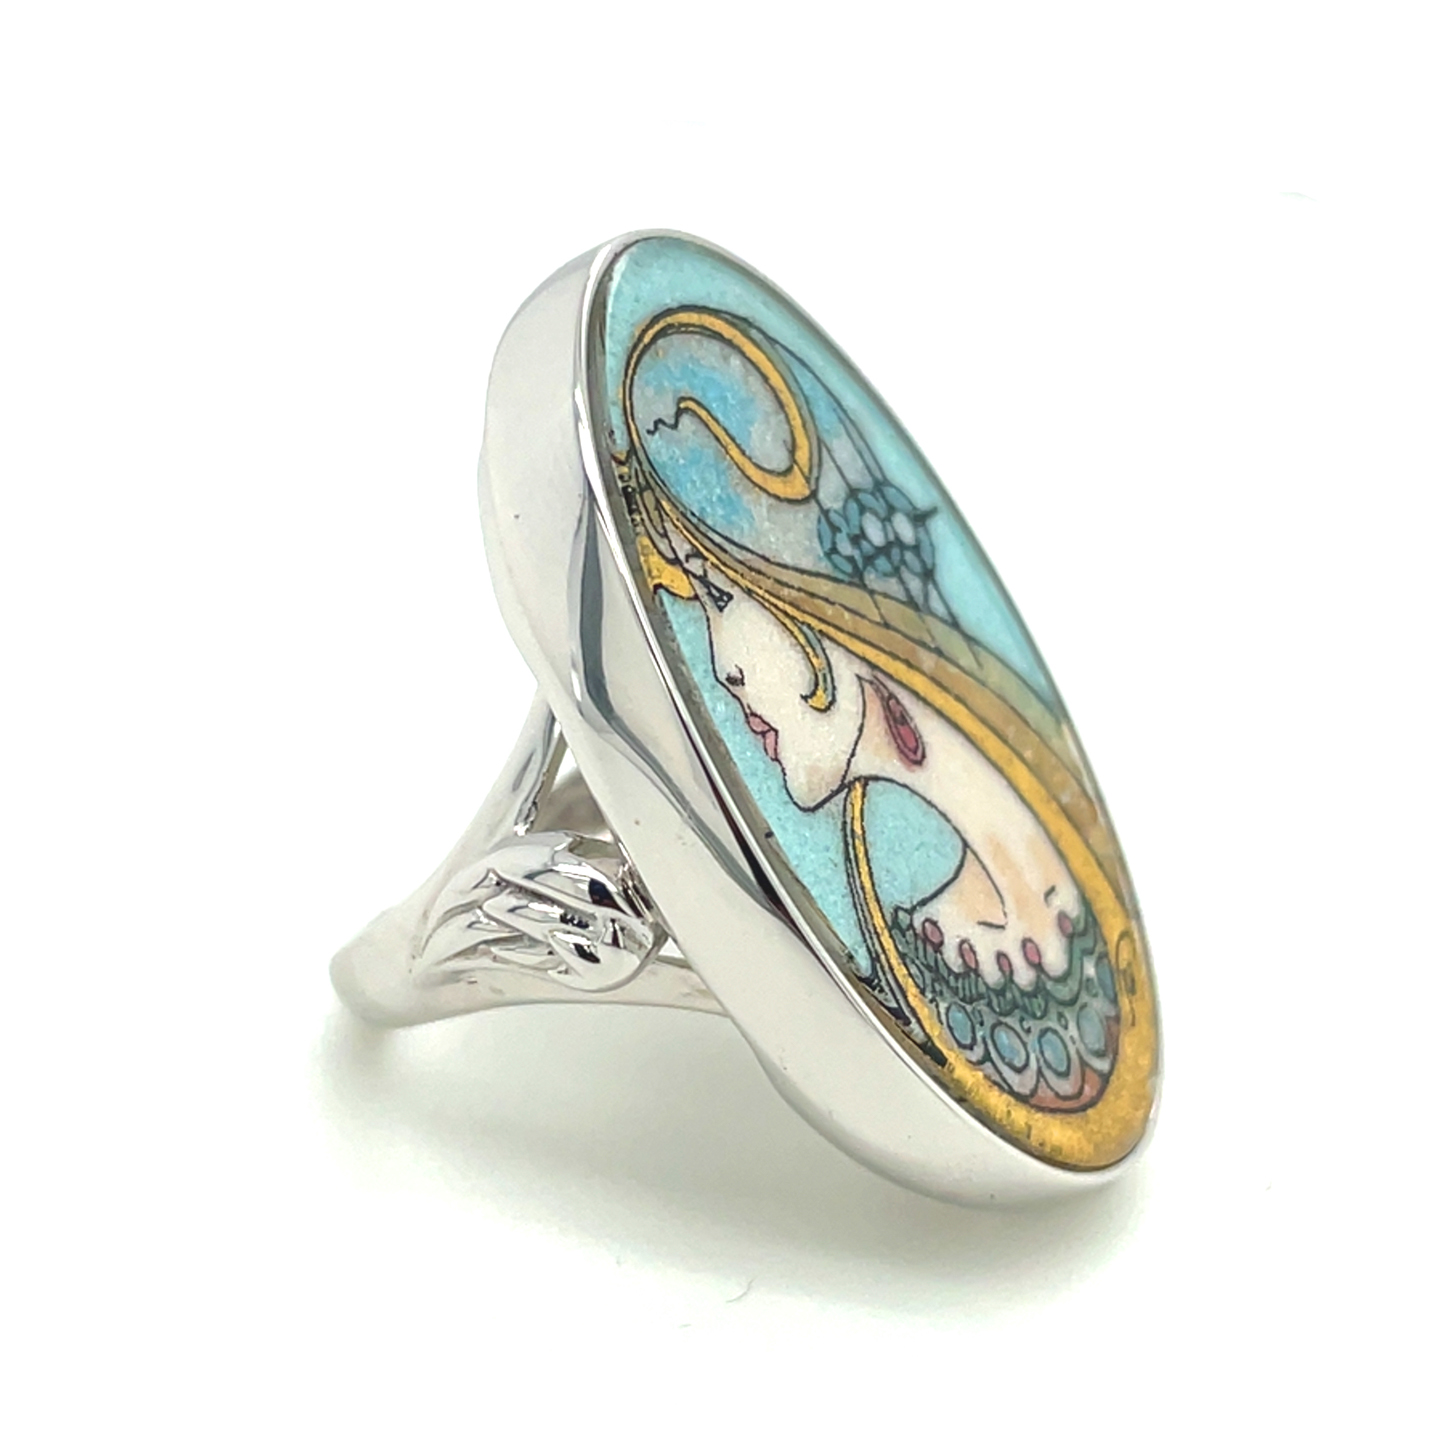 Engel der Unendlichkeit / Angel of Eternity - Edelsteingemälde - Ringe in 925 Sterling Silber, rhod. 